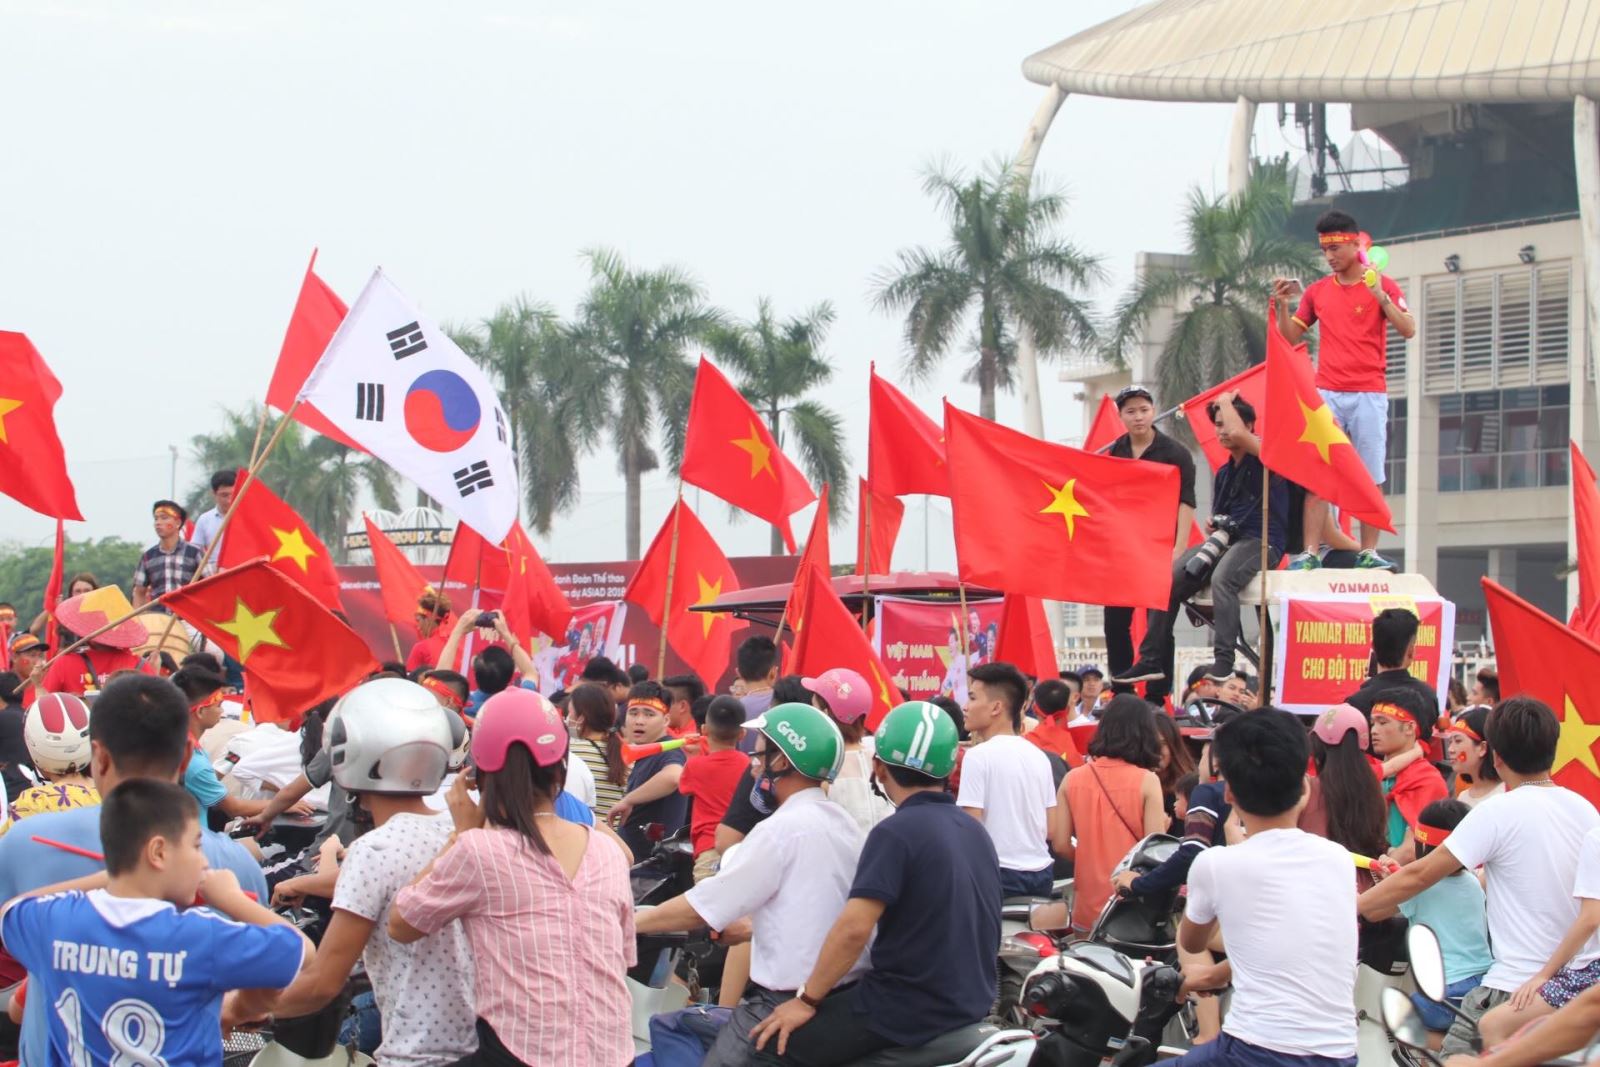 Mỗi người một lá cờ đỏ giơ cao, cả cờ Việt Nam và cờ Hàn Quốc, như một lời tri ân với các VĐV, cầu thủ và các H:LV, đặc biệt là HLV của Olympic Việt Nam Park Hang Seo, bởi dù thất bại, những gì đội tuyển bóng đá nam Việt Nam làm được tại Asiad 2018, với sự dẫn dắt của HLV Park Hang Seo, vẫn là một kỳ tích.